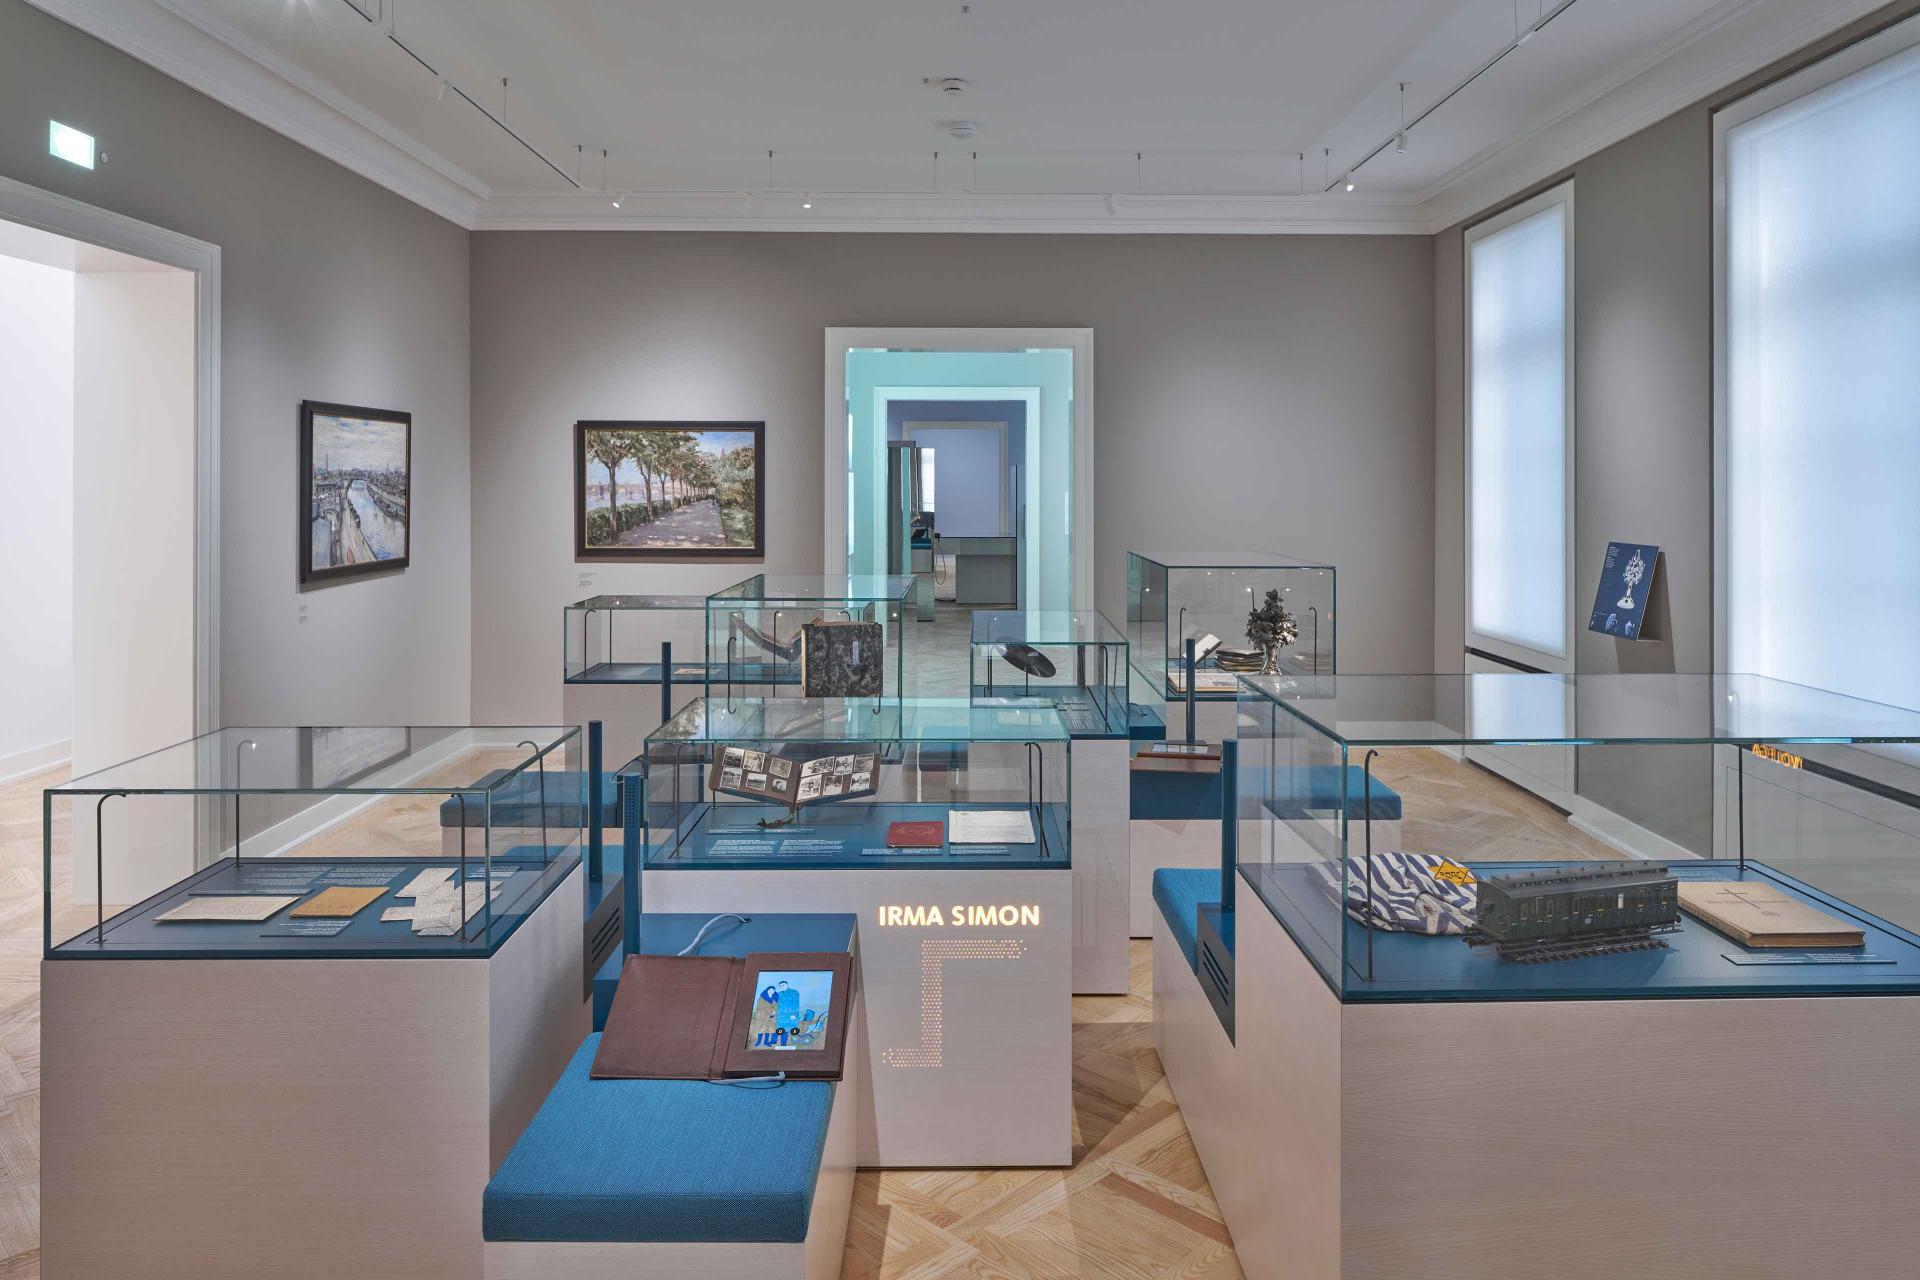 Ausstellungsraum mit Vitrinen, in denen auf blauem Untergrund Objekte liegen.